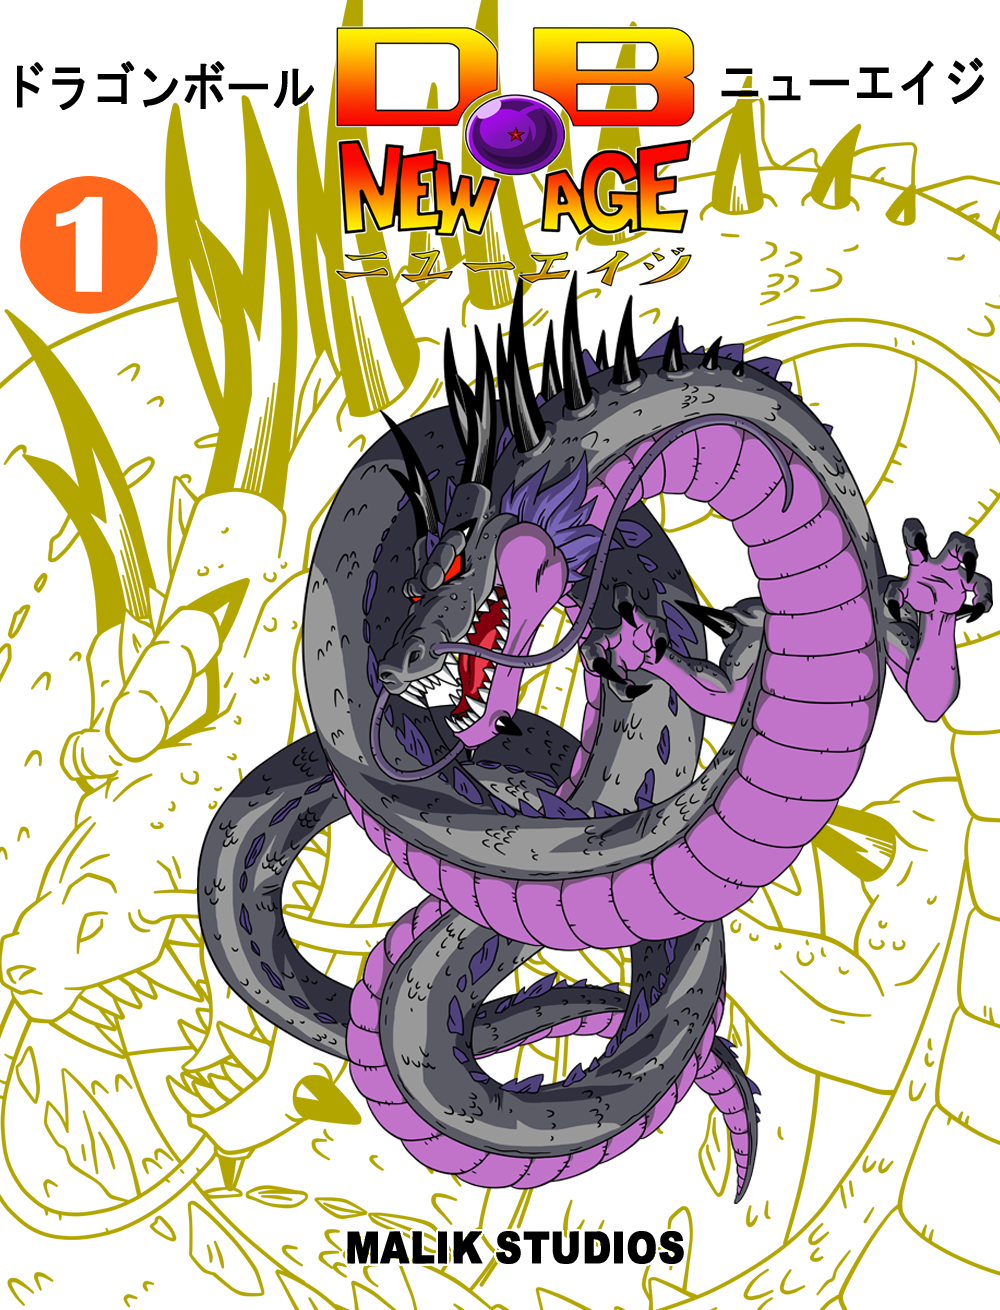 Dragon Ball Fan Manga added a new - Dragon Ball Fan Manga